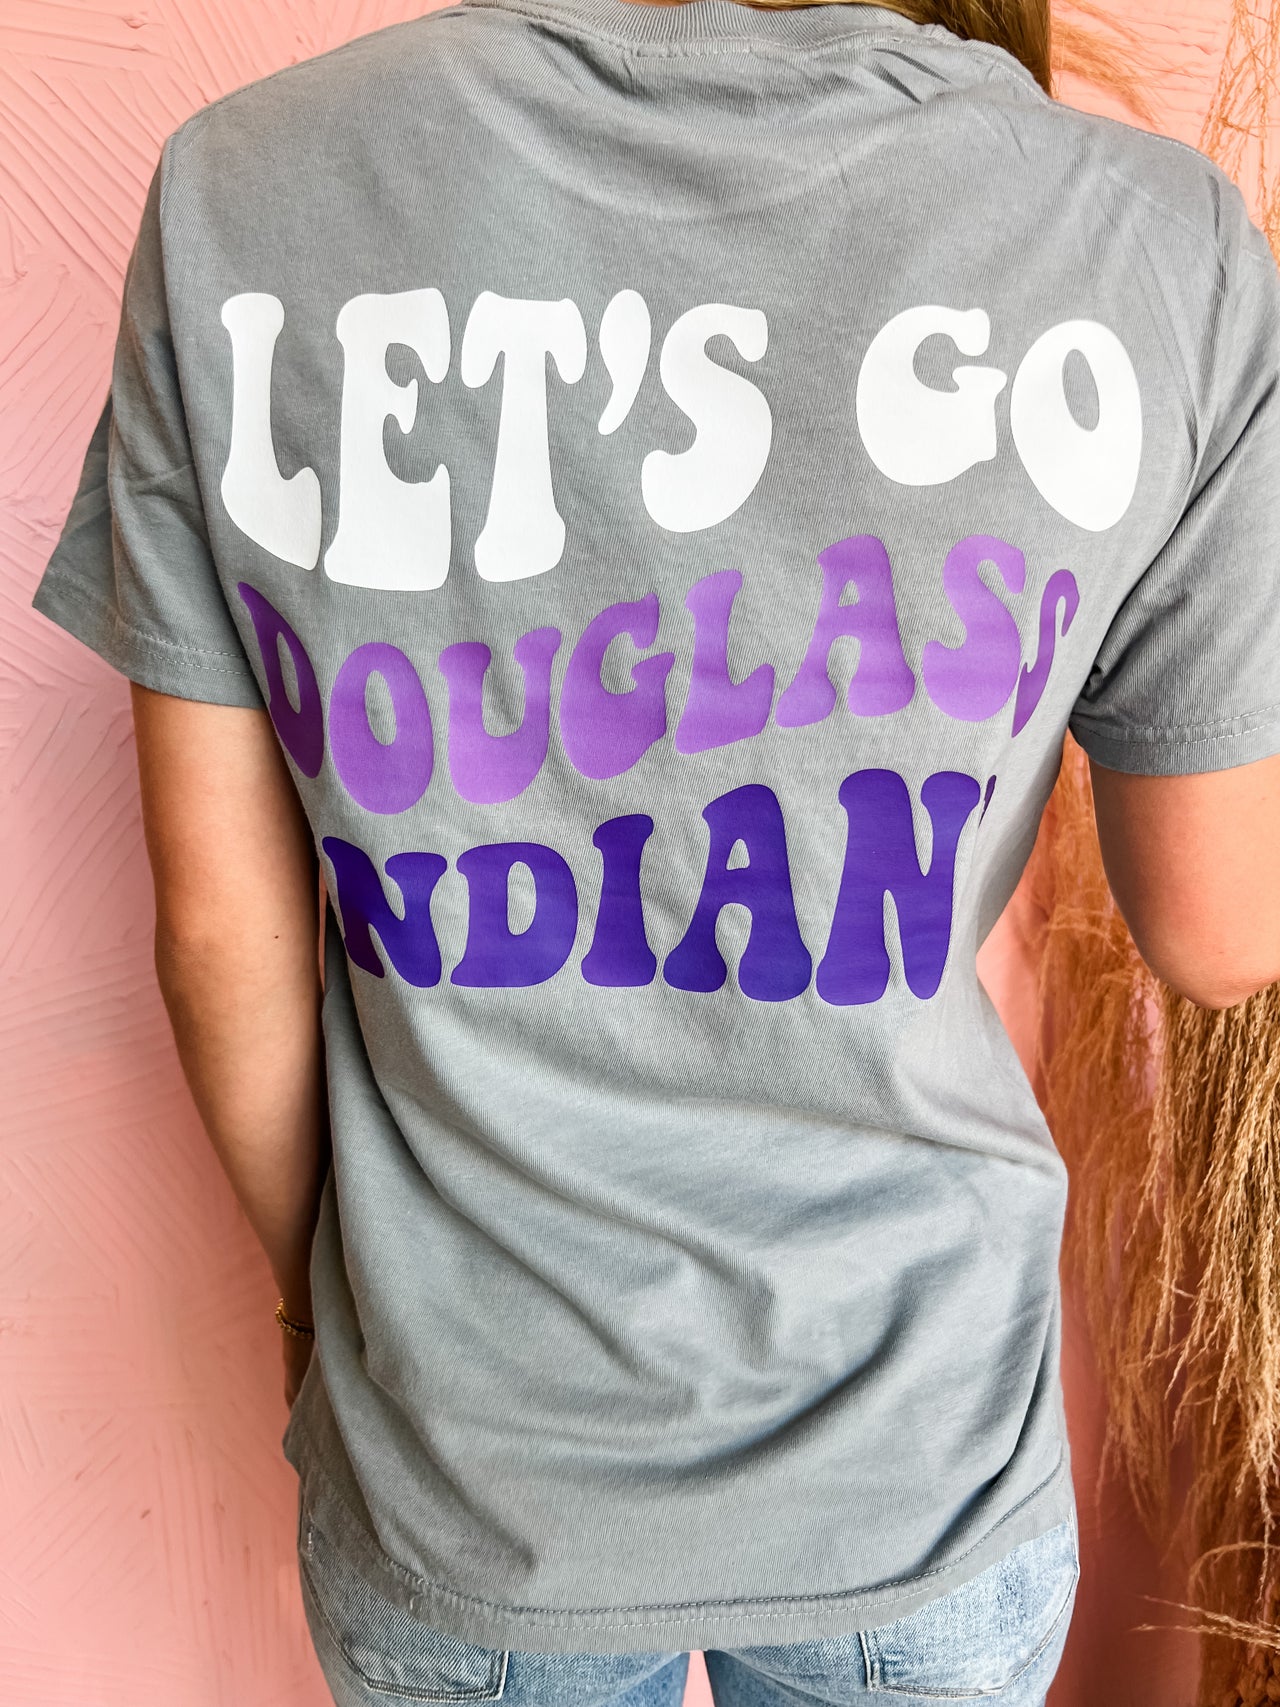 Let's Go Douglass Indians- Adult